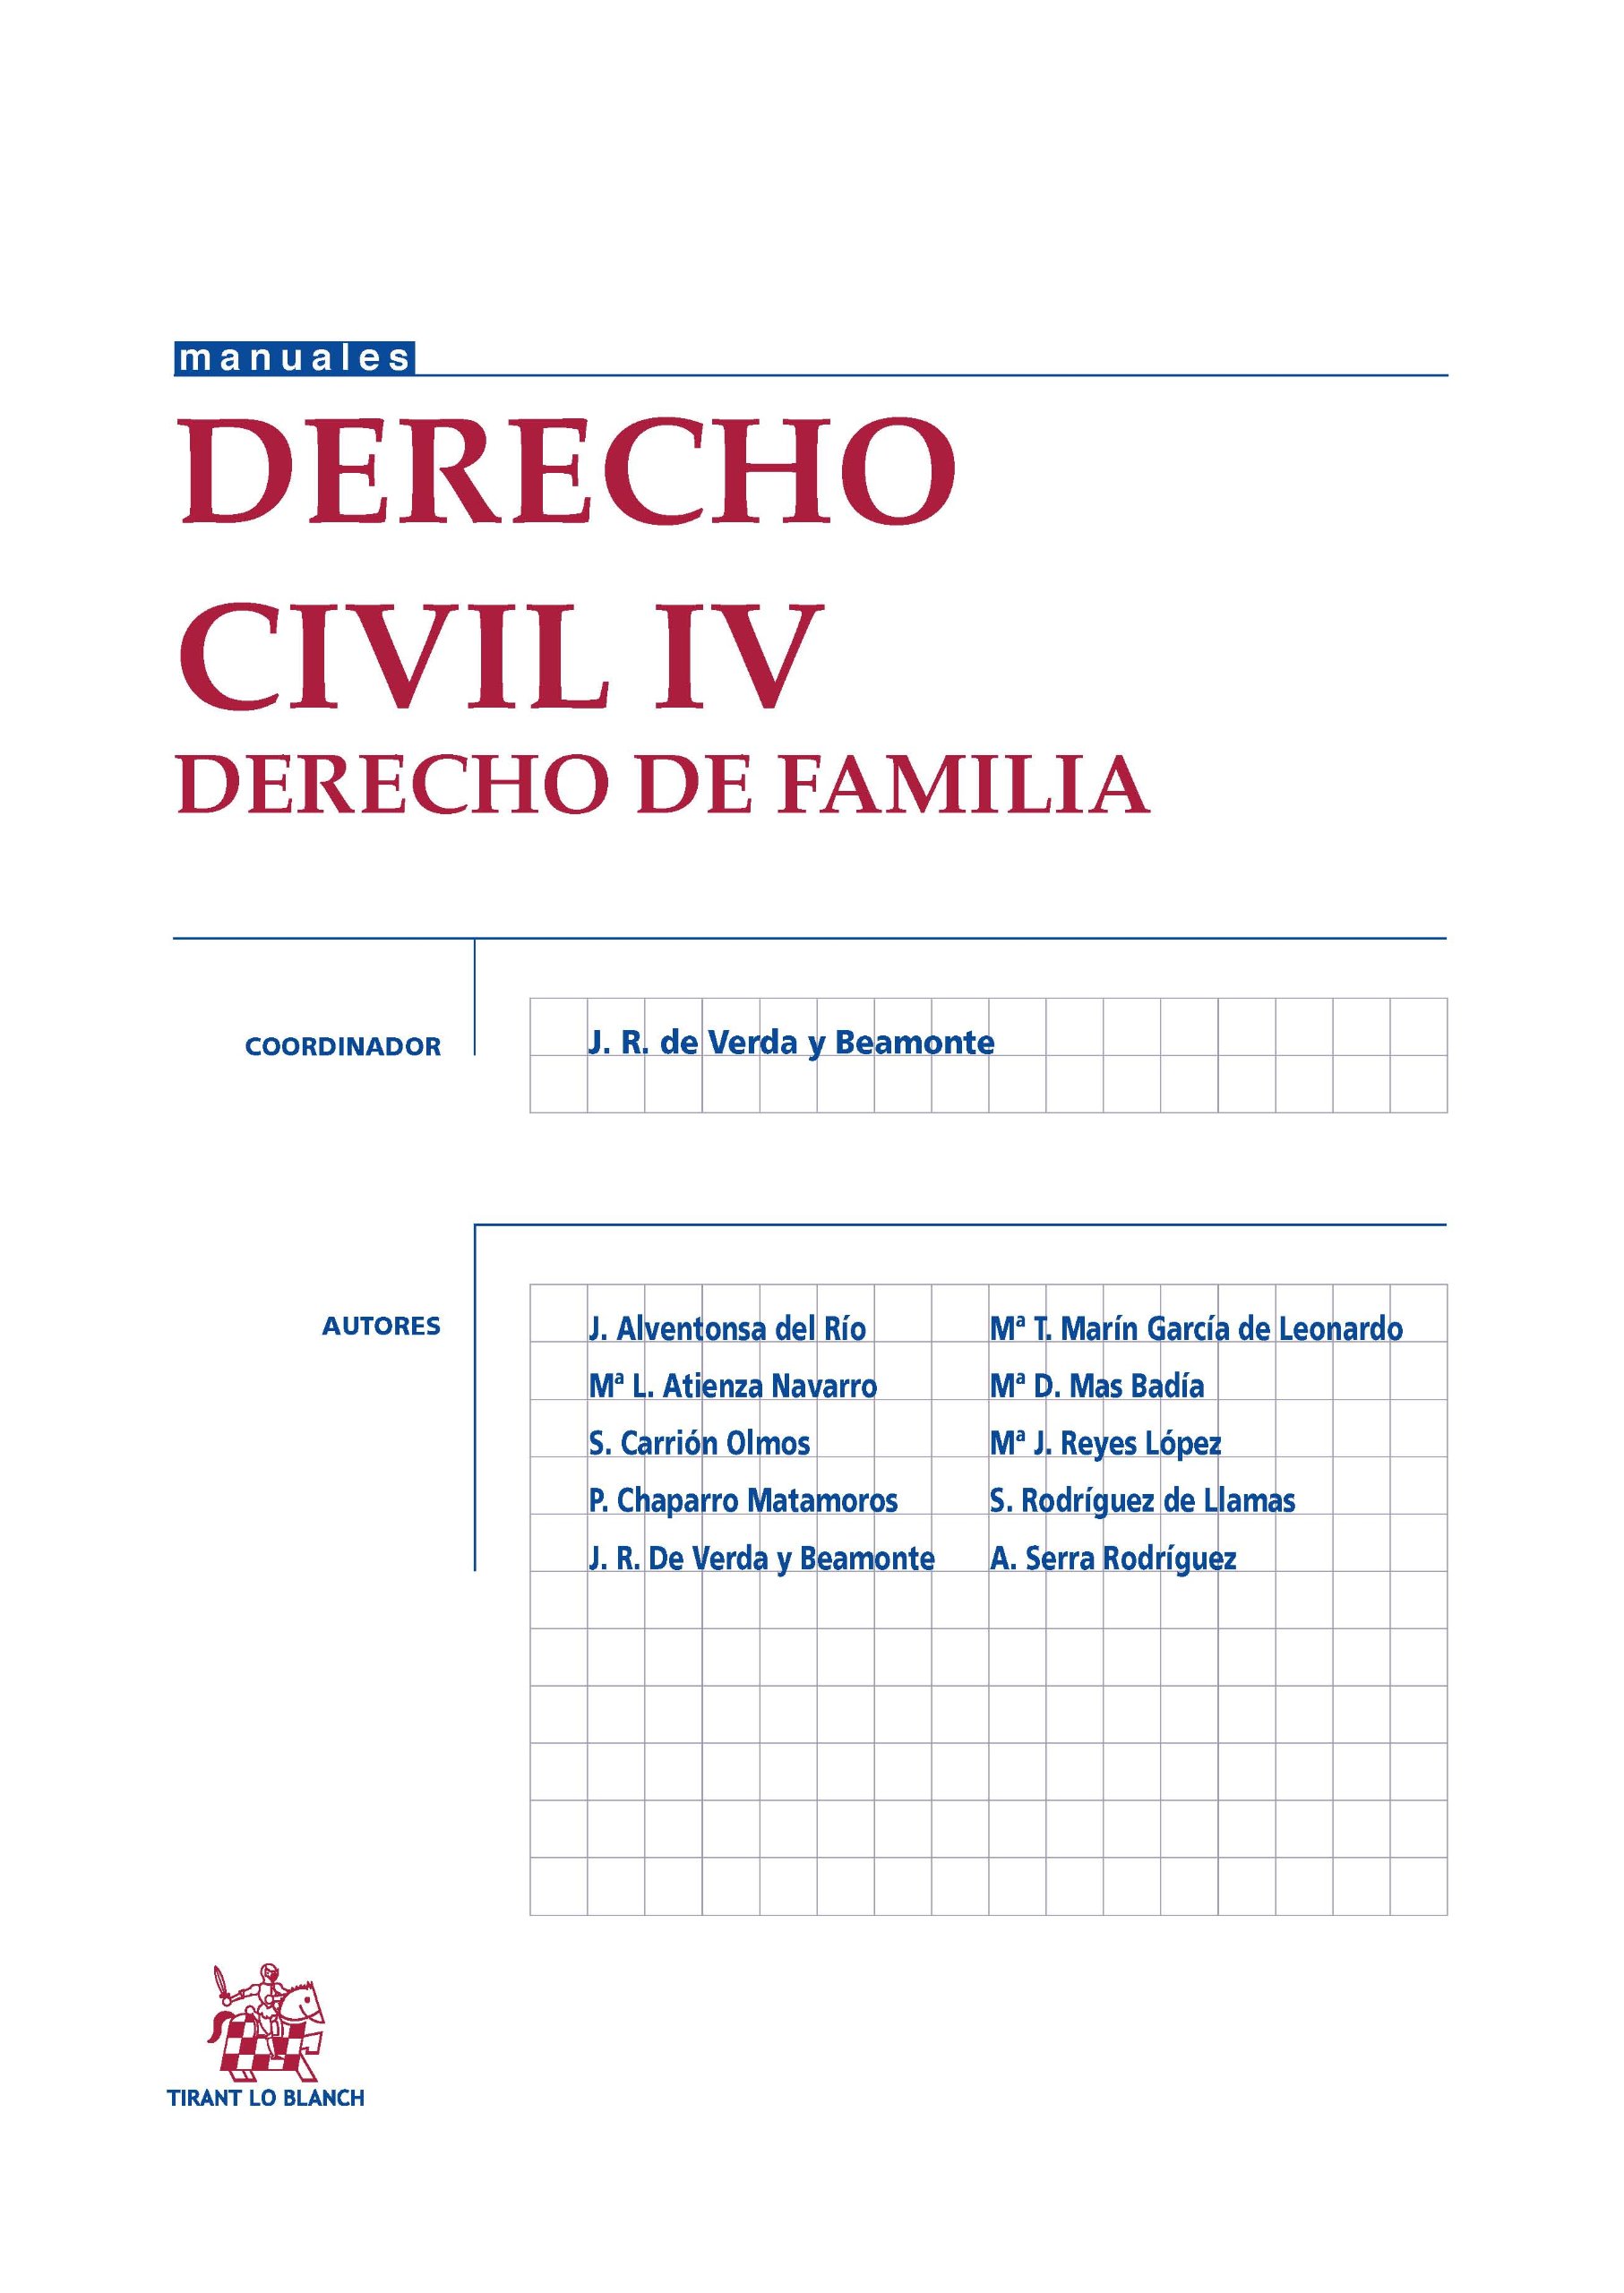 Imagen de portada del libro Derecho civil IV